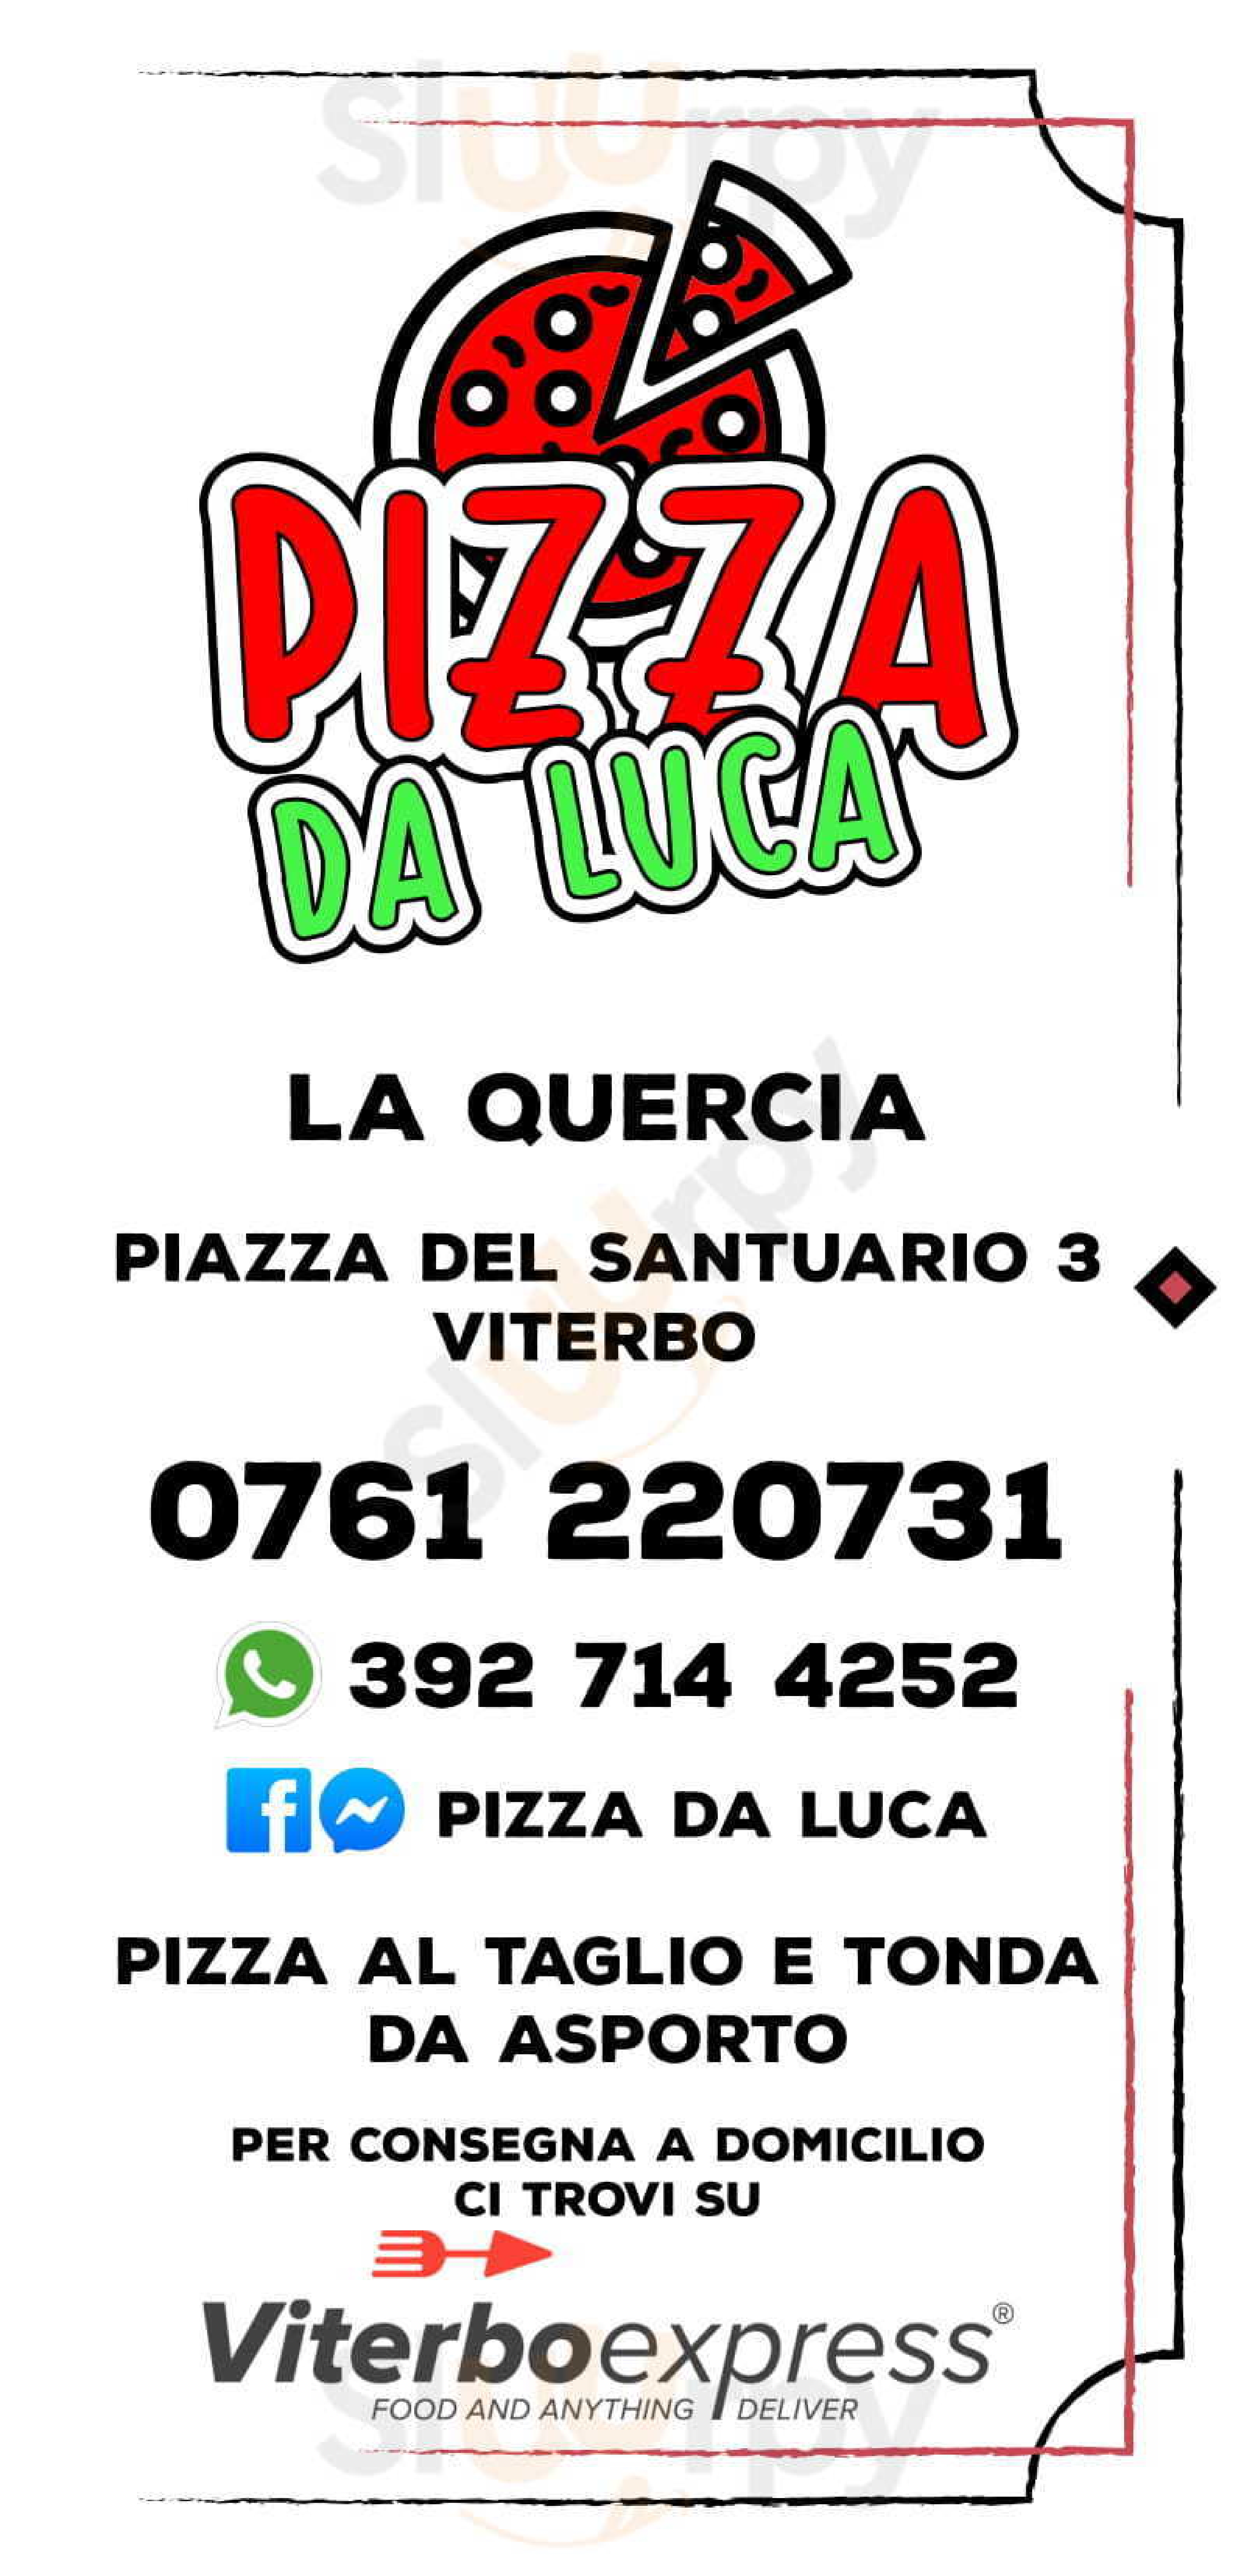 Pizza da Luca / La Quercia Viterbo menù 1 pagina